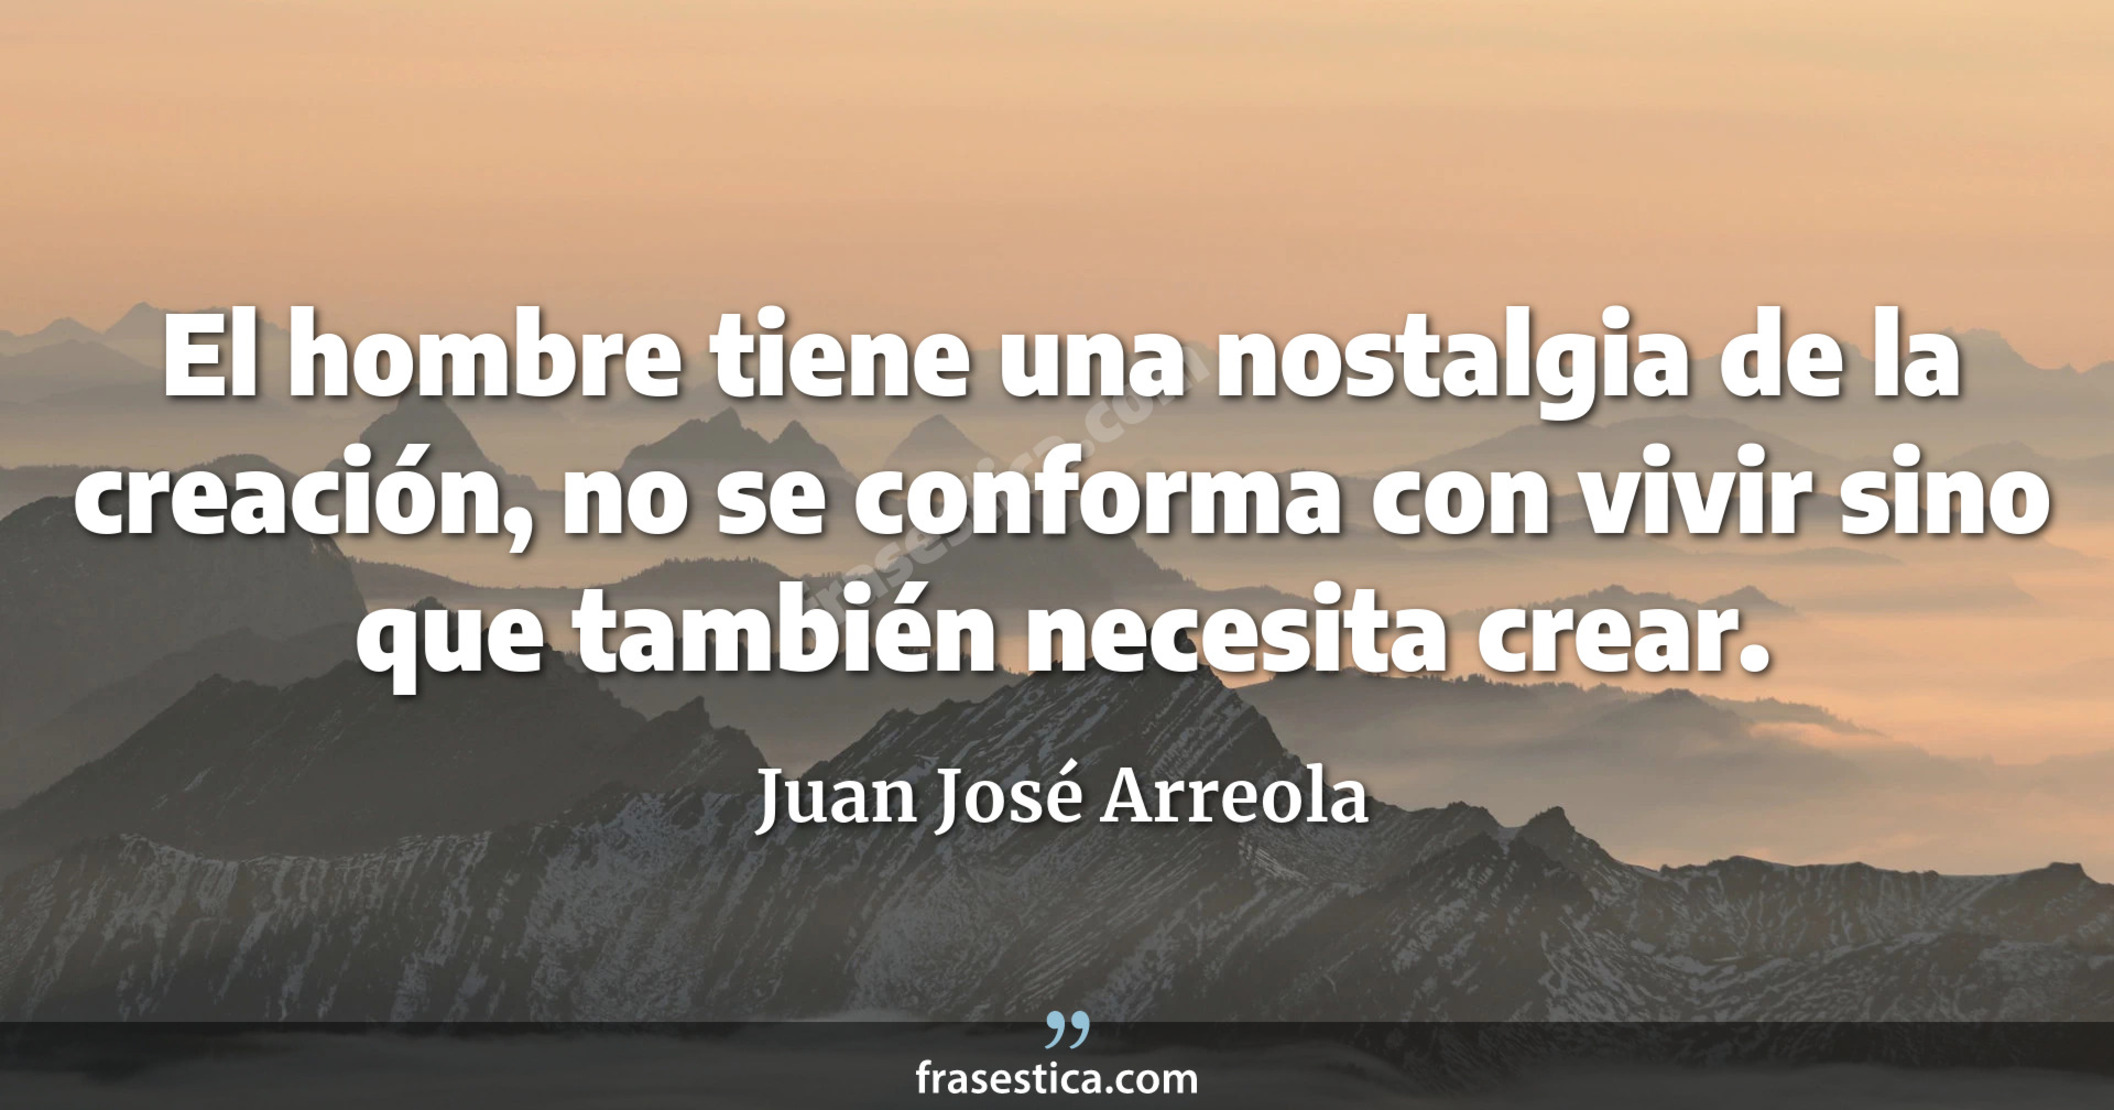 El hombre tiene una nostalgia de la creación, no se conforma con vivir sino que también necesita crear. - Juan José Arreola